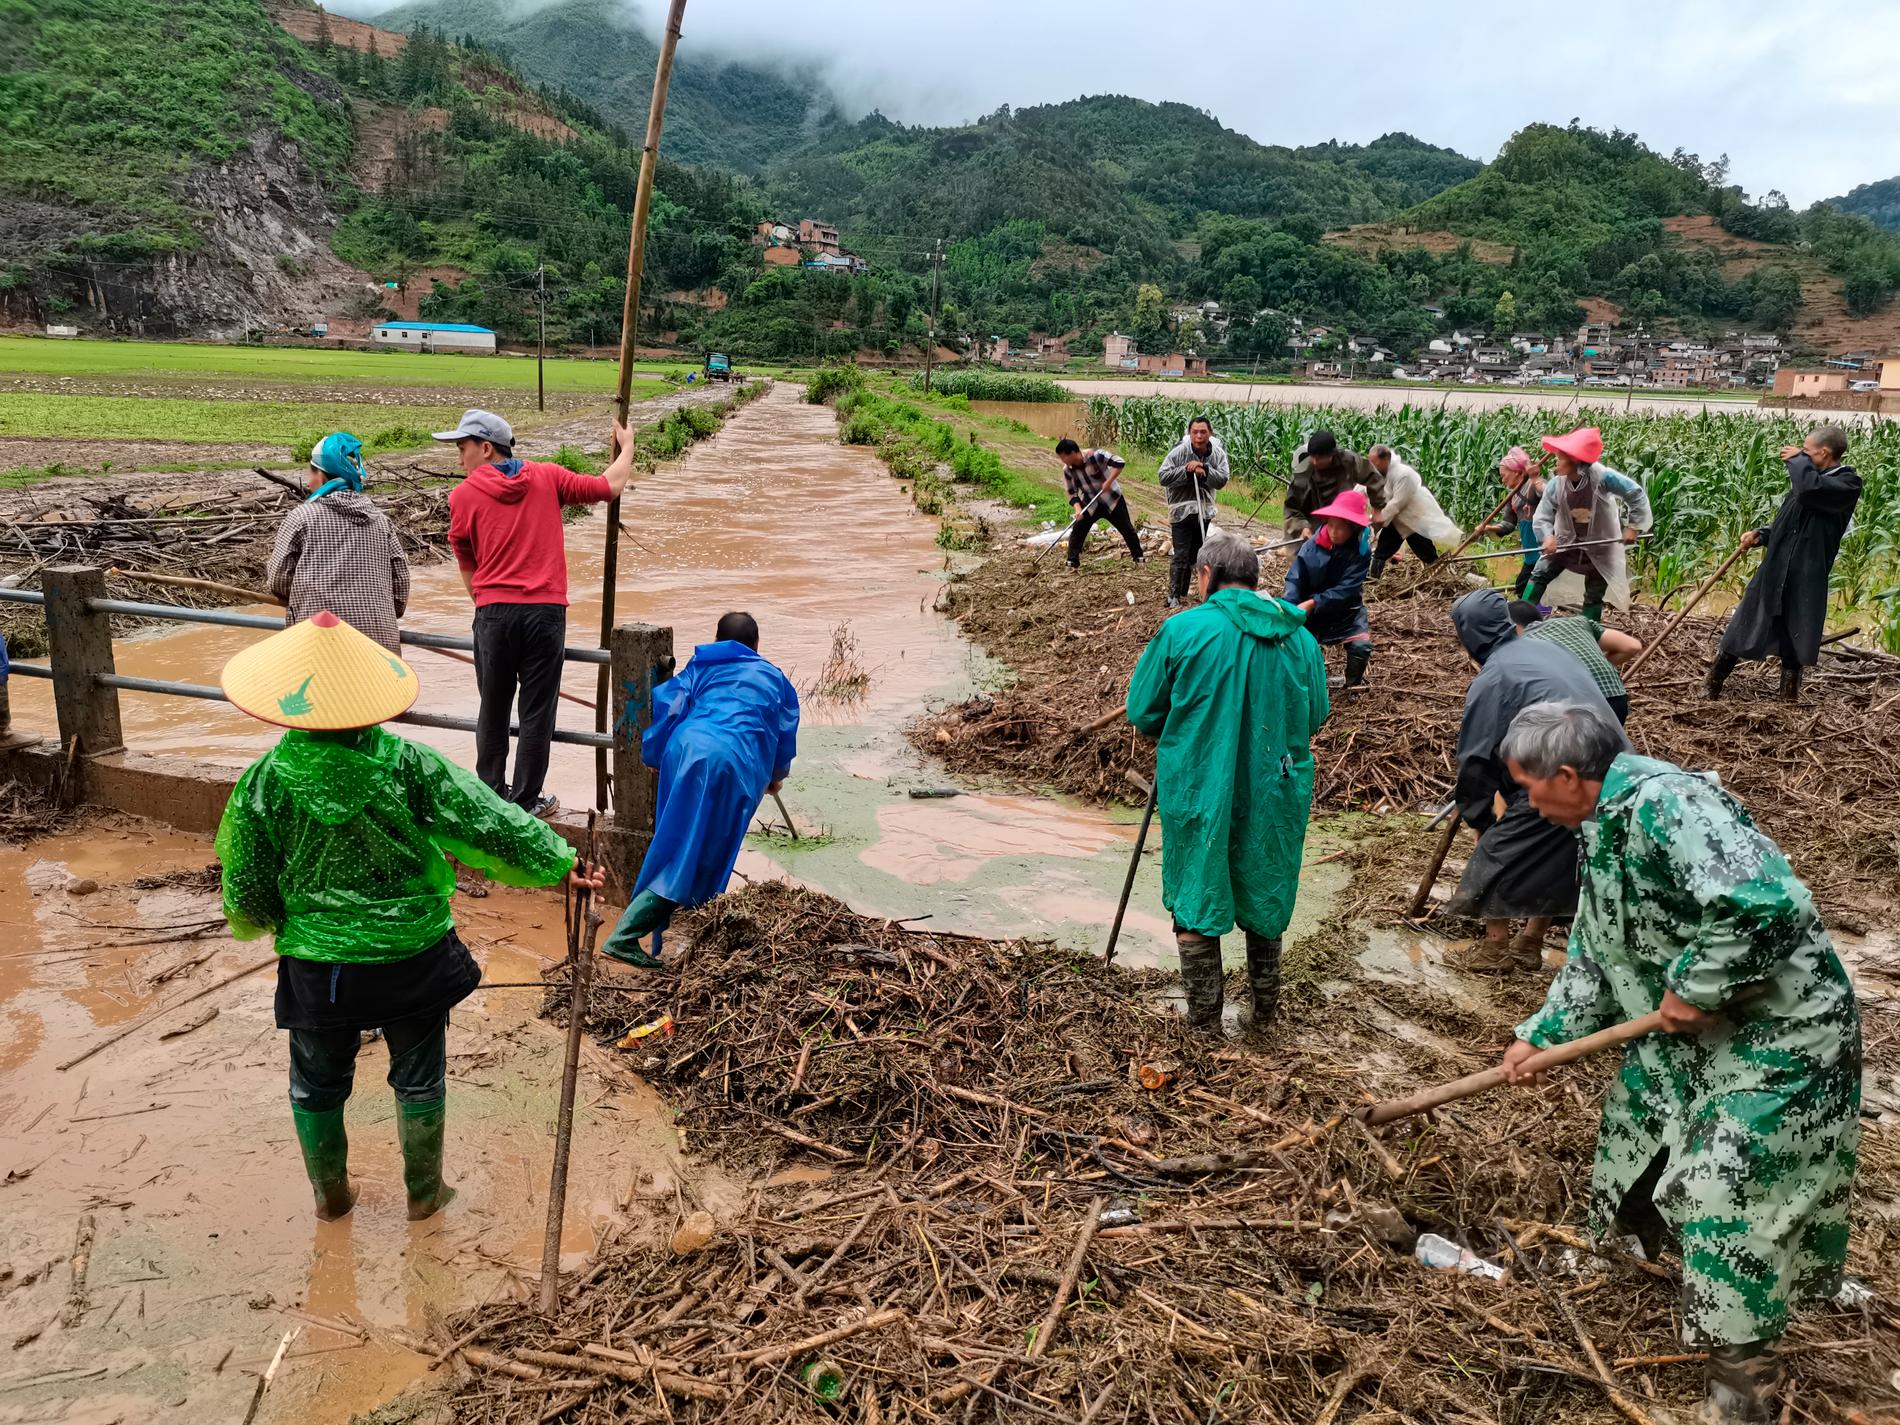 Människor arbetar på ett översvämmat fält i Yunnan-provinsen i sydvästra Kina.